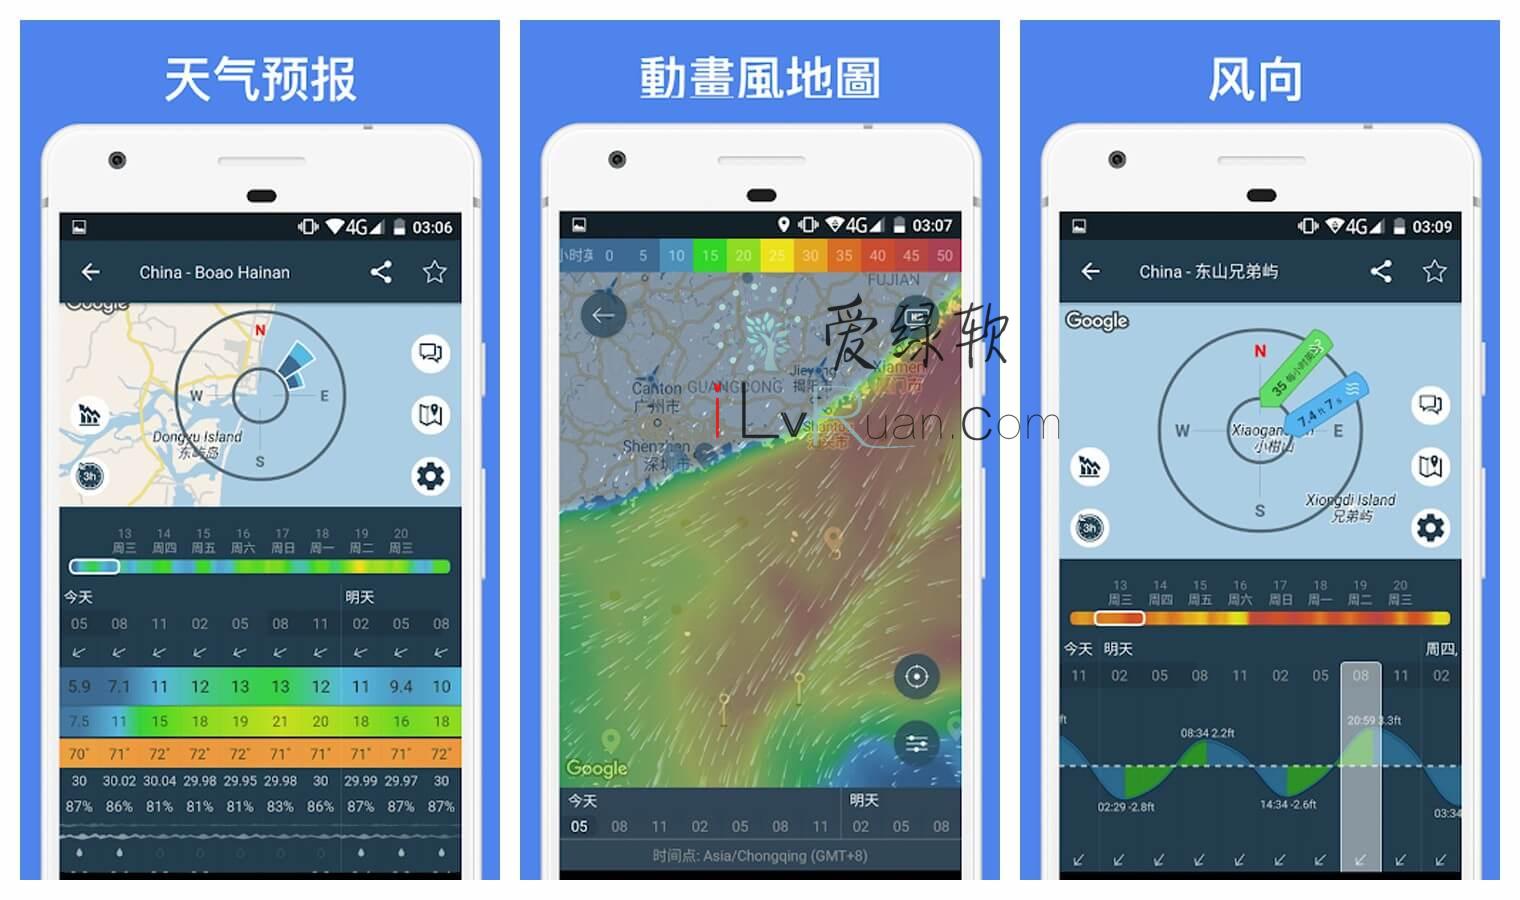 安卓 台风预测地图 Windy.app v15.0.0 付费专业版